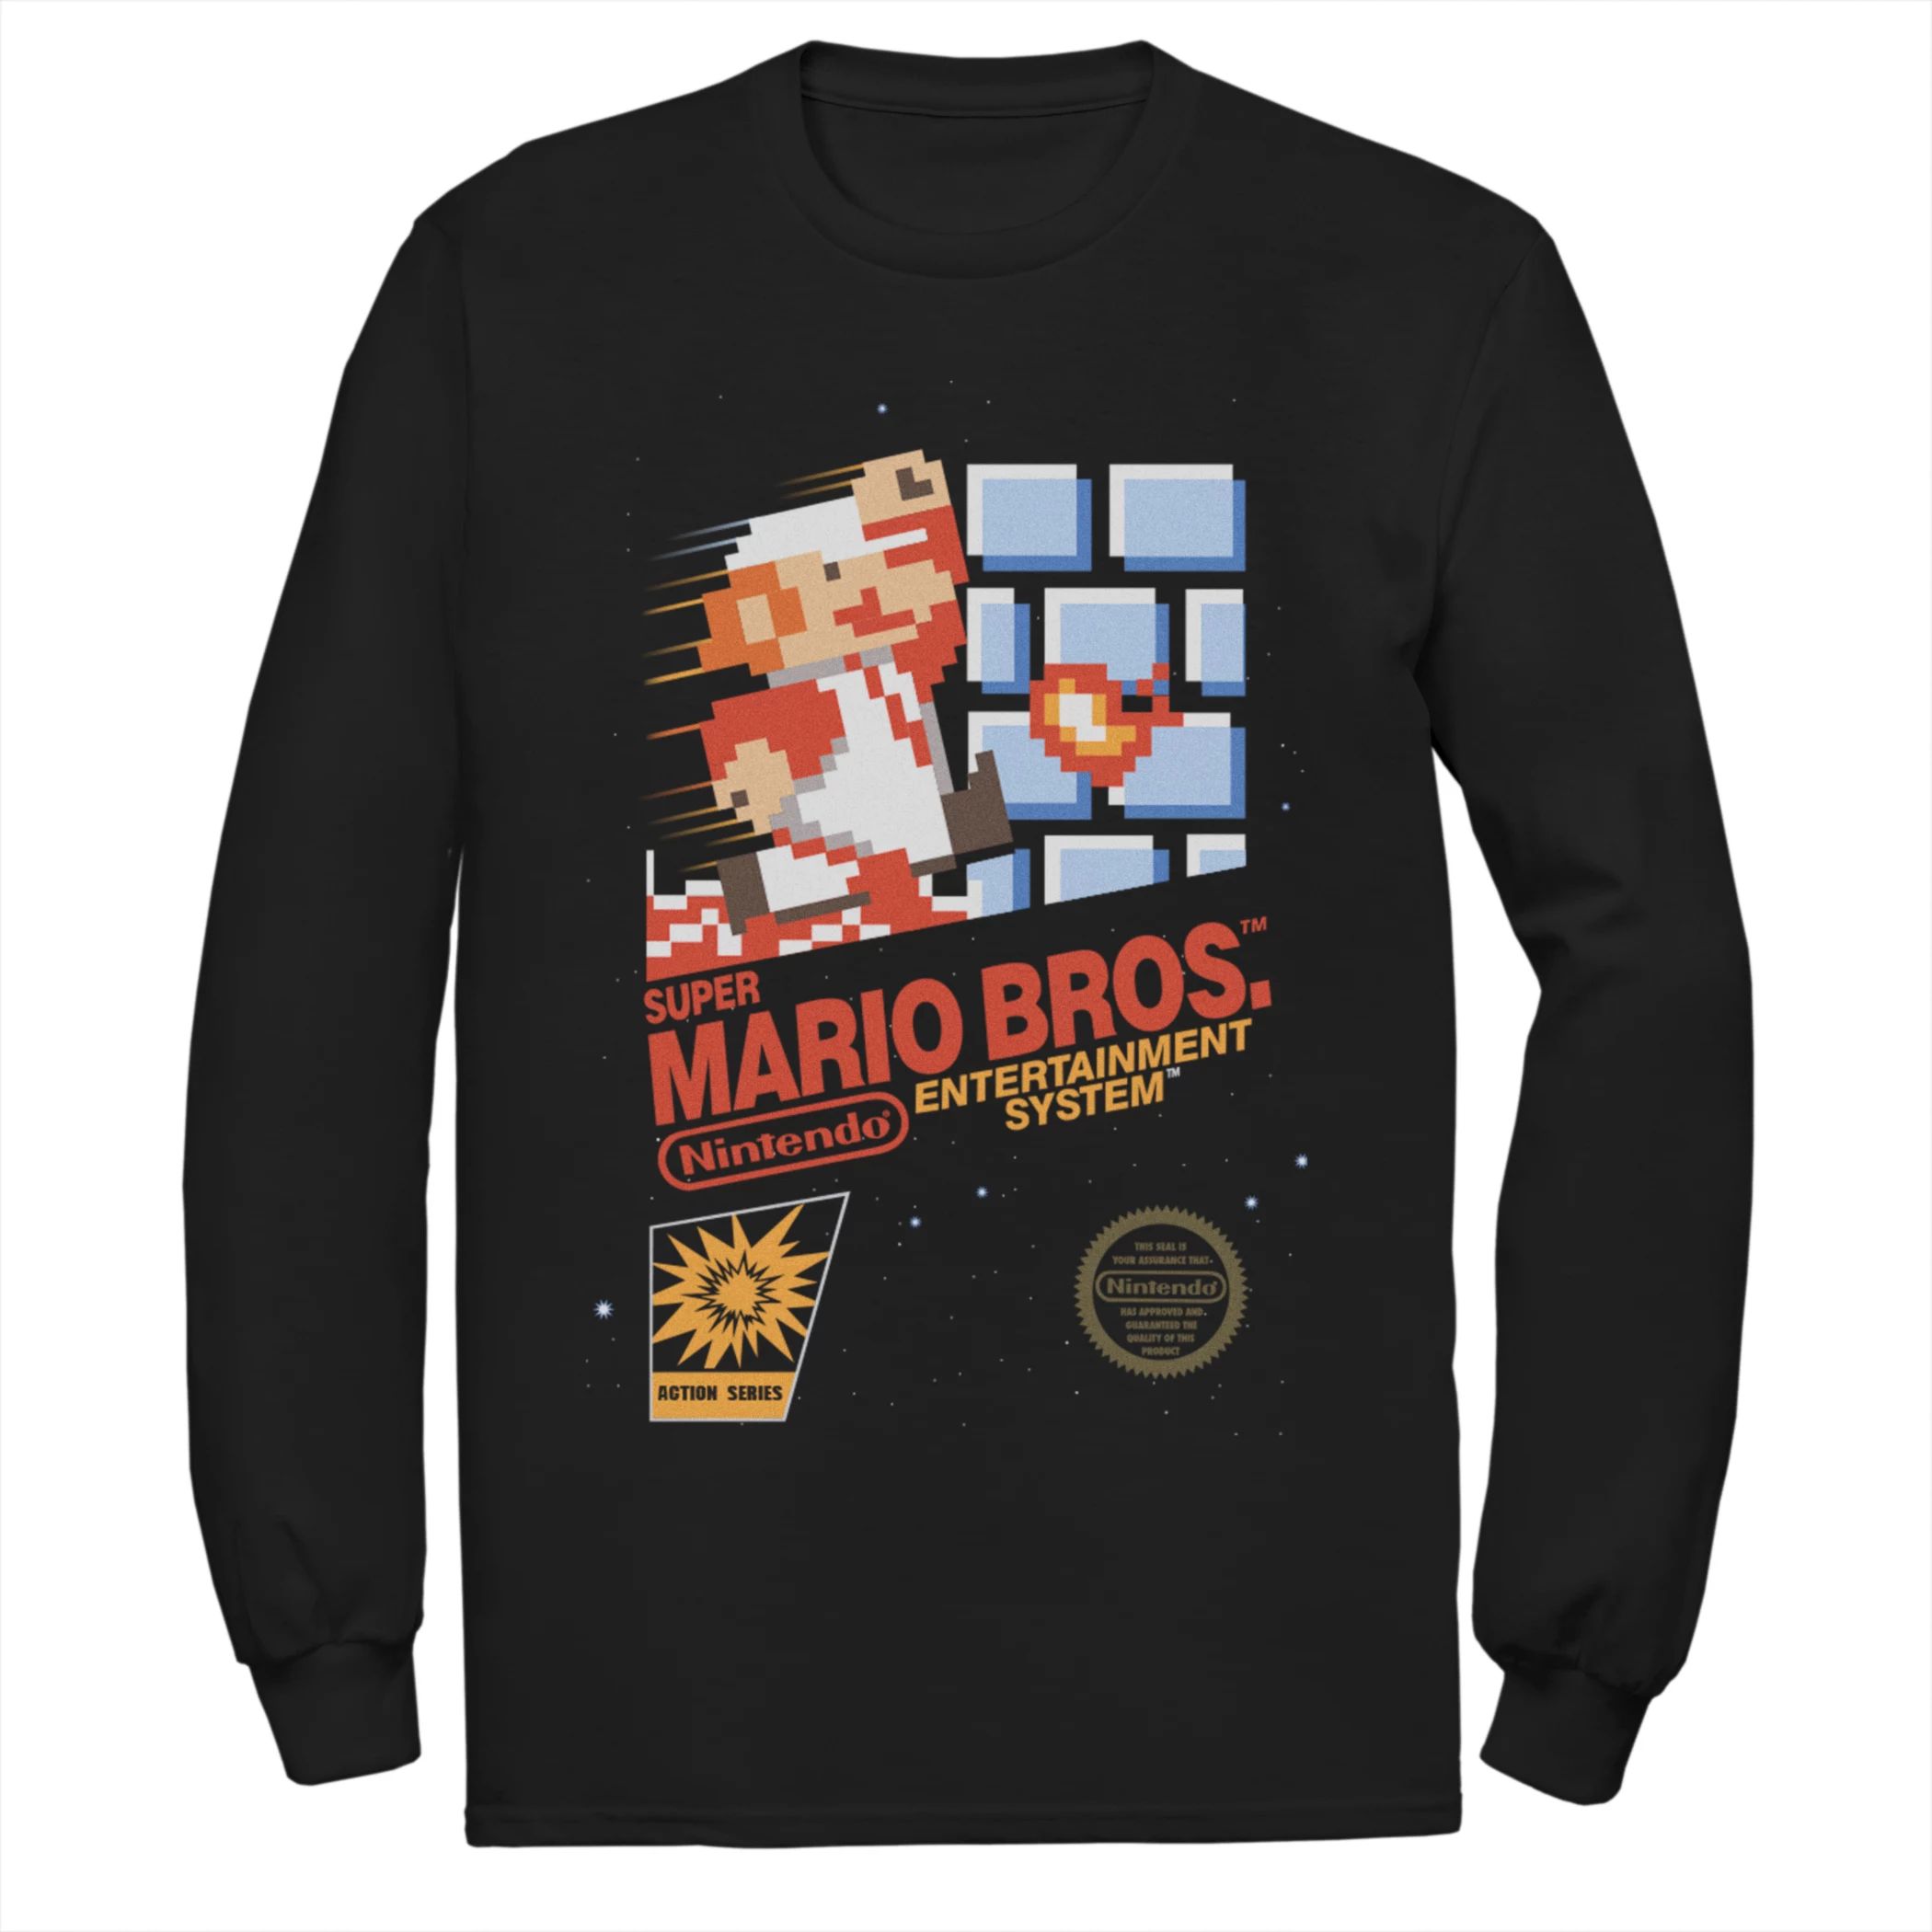 Мужская футболка Nintendo Super Mario Bros. Licensed Character игра для nintendo super smash bros